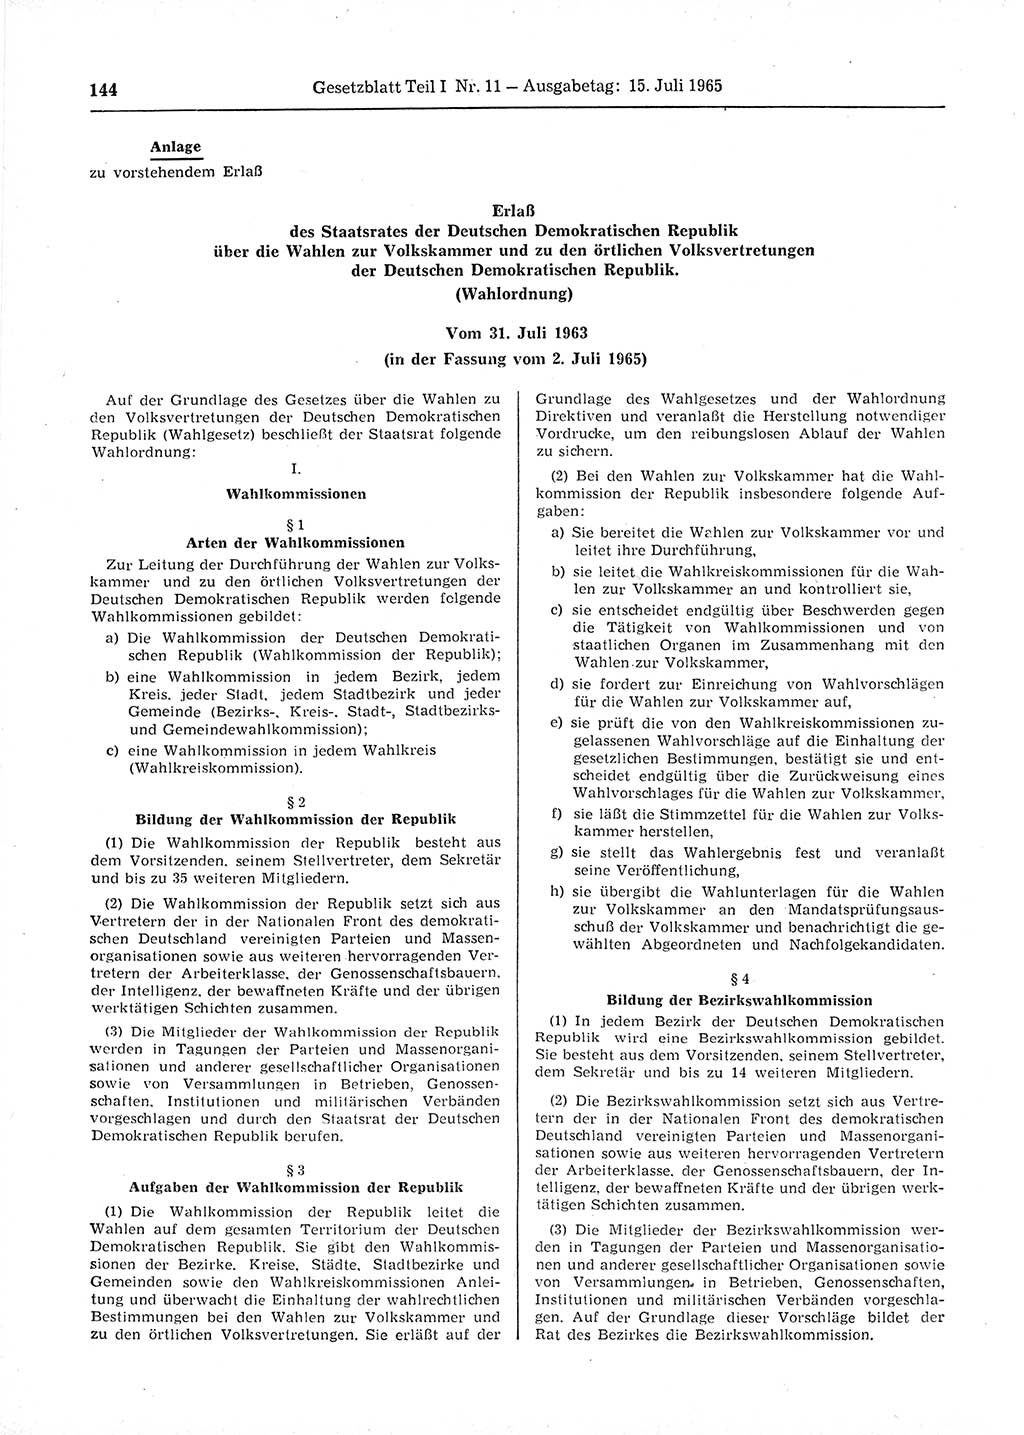 Gesetzblatt (GBl.) der Deutschen Demokratischen Republik (DDR) Teil Ⅰ 1965, Seite 144 (GBl. DDR Ⅰ 1965, S. 144)